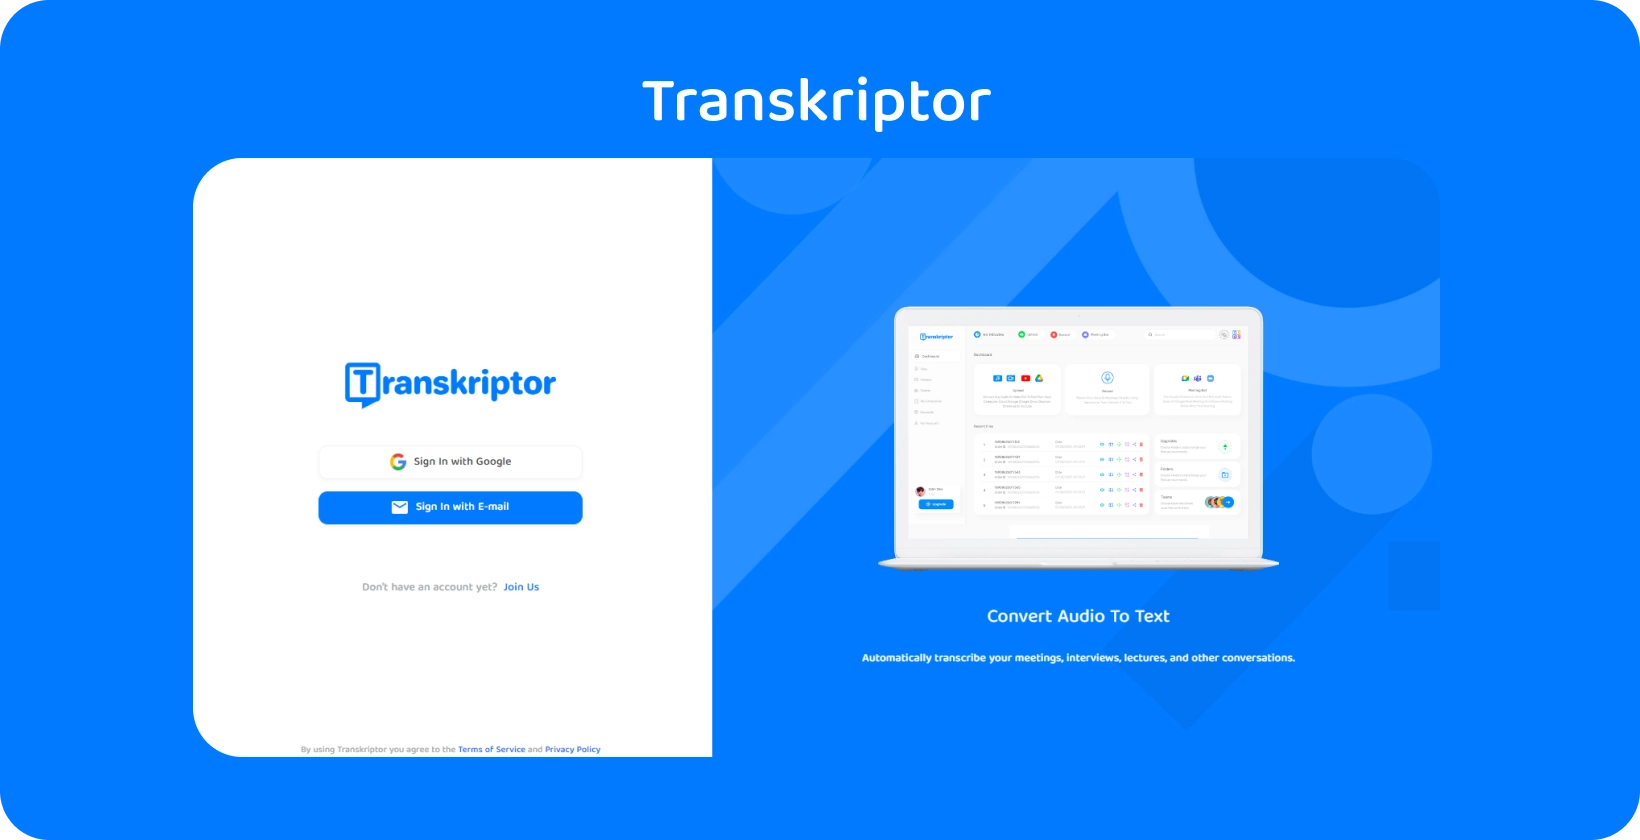 ממשק אפליקציה Transkriptor המציג שירותי תמלול אודיו לטקסט קלים לקבלת תובנות על רשומות רפואיות.